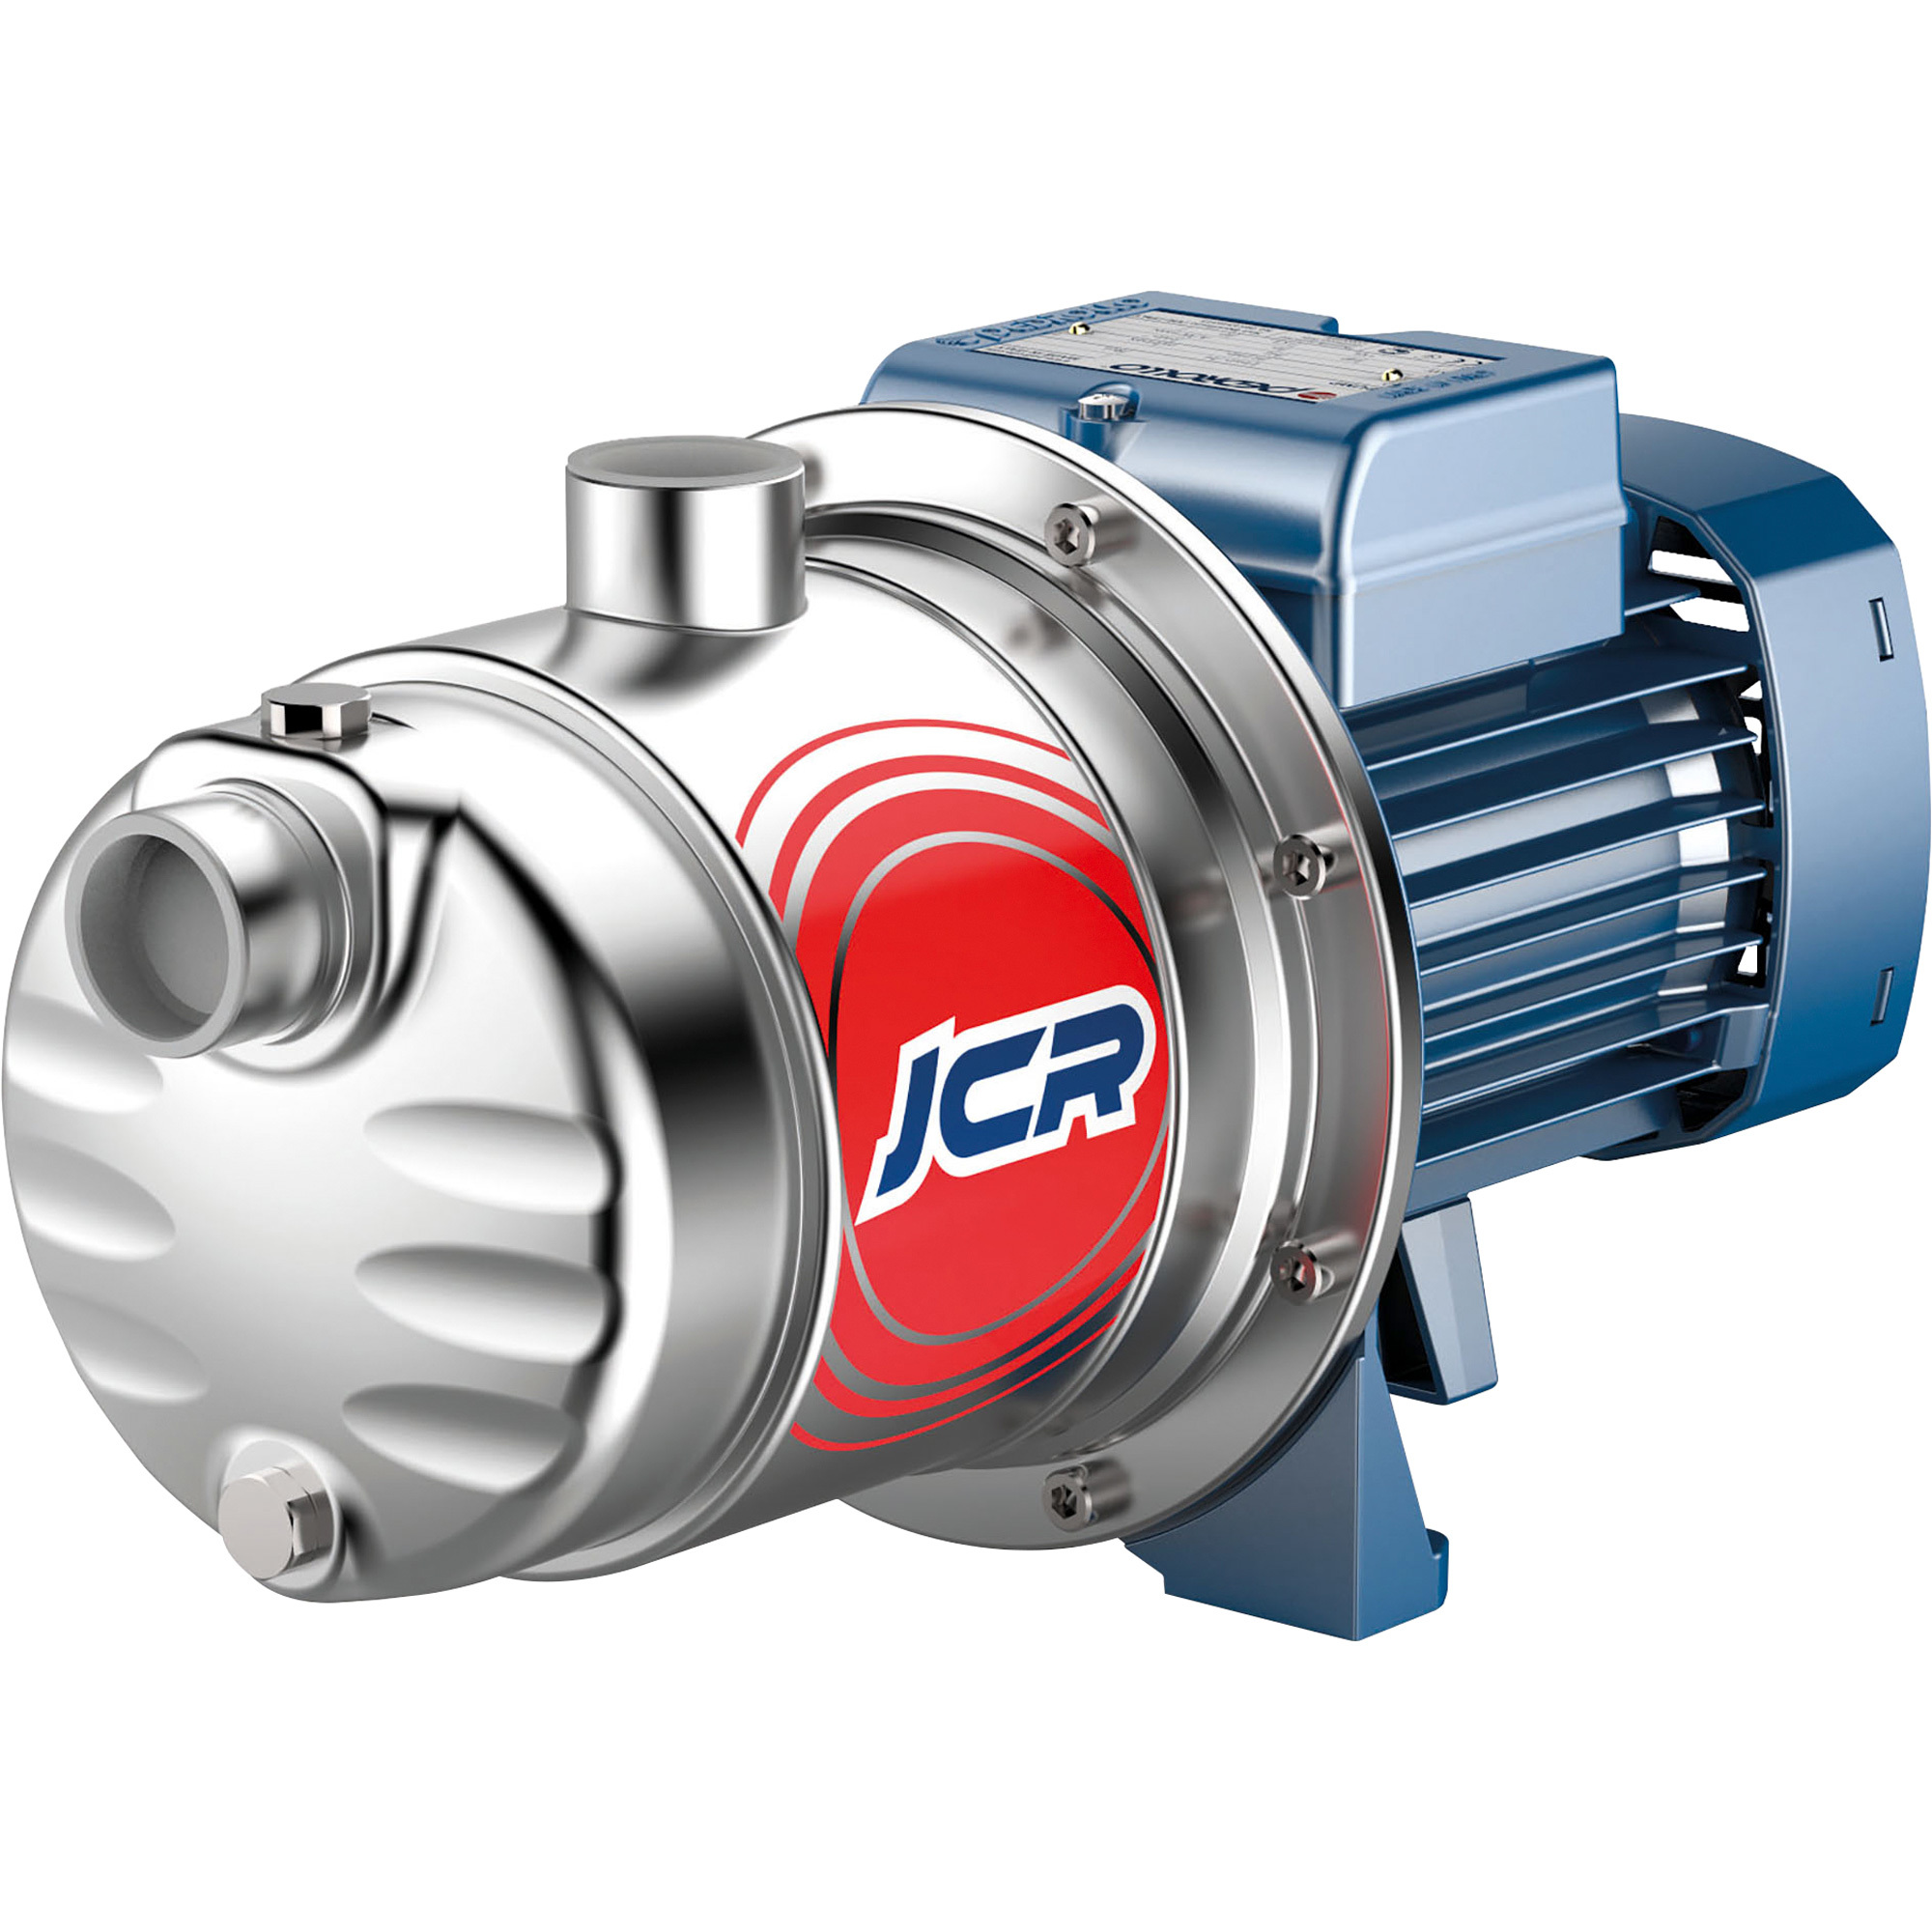 Pedrollo Self-Priming Sprinkler/Booster Water Pump â 951 GPH, 1/2 HP, 115/230 Volts, Model JCRm 1C